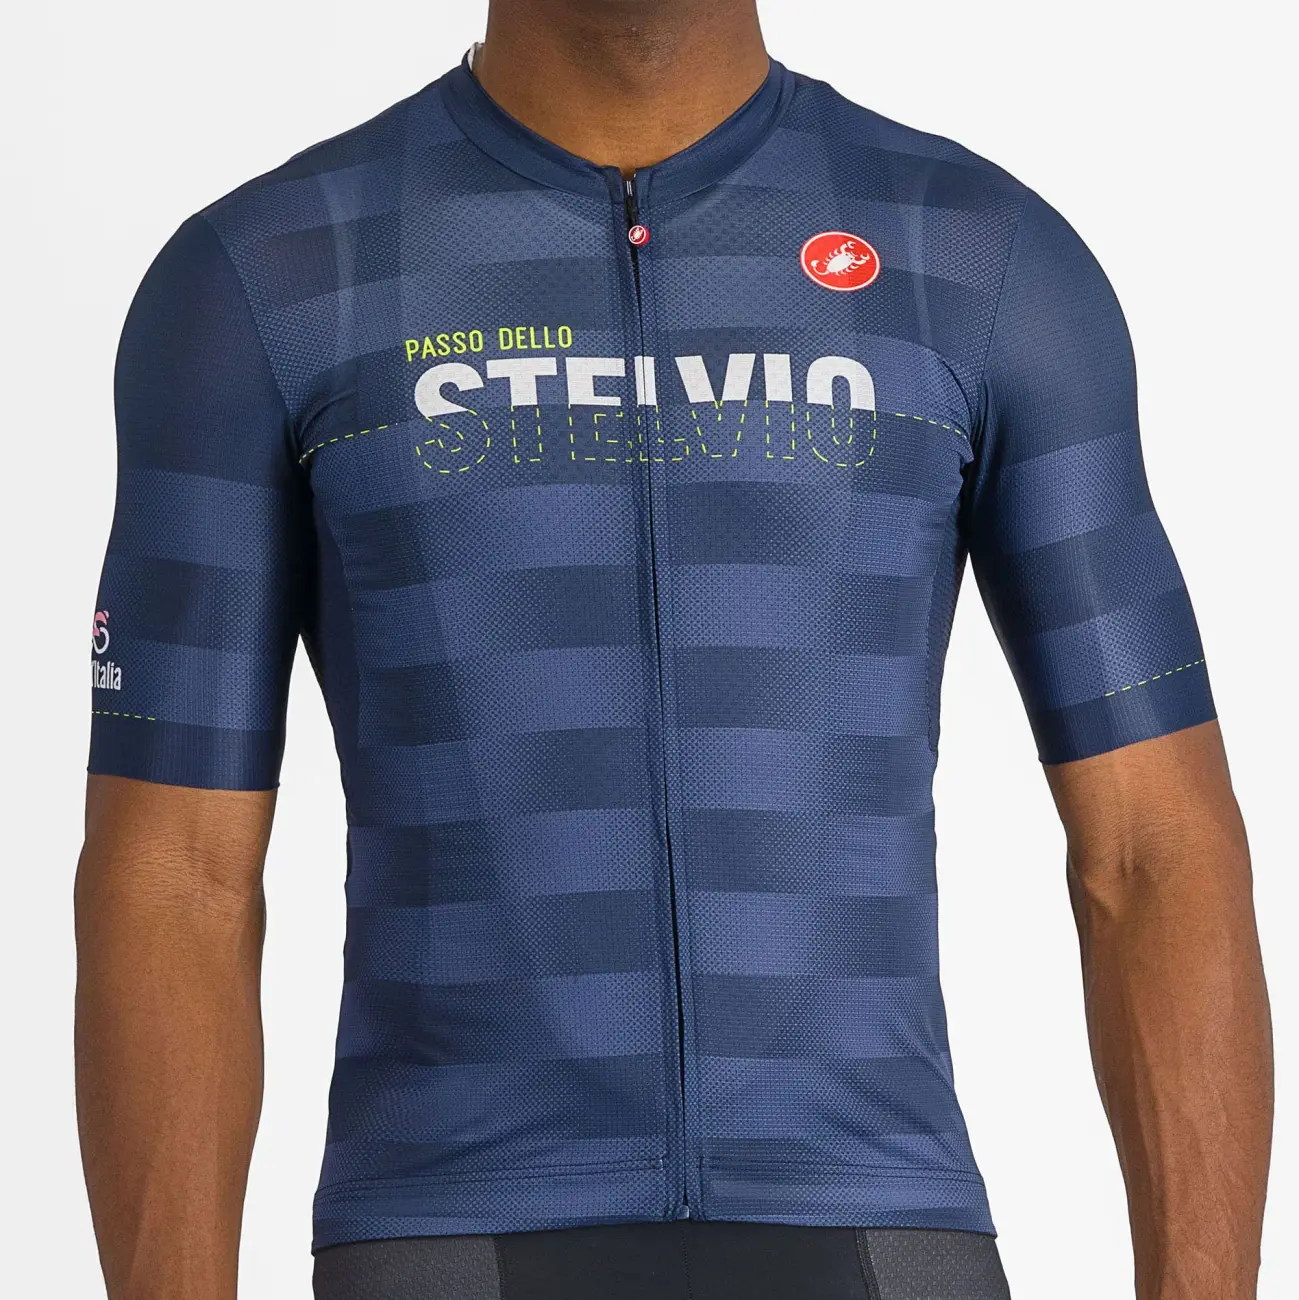 
                CASTELLI Cyklistický dres s krátkým rukávem - GIRO107 STELVIO - modrá L
            